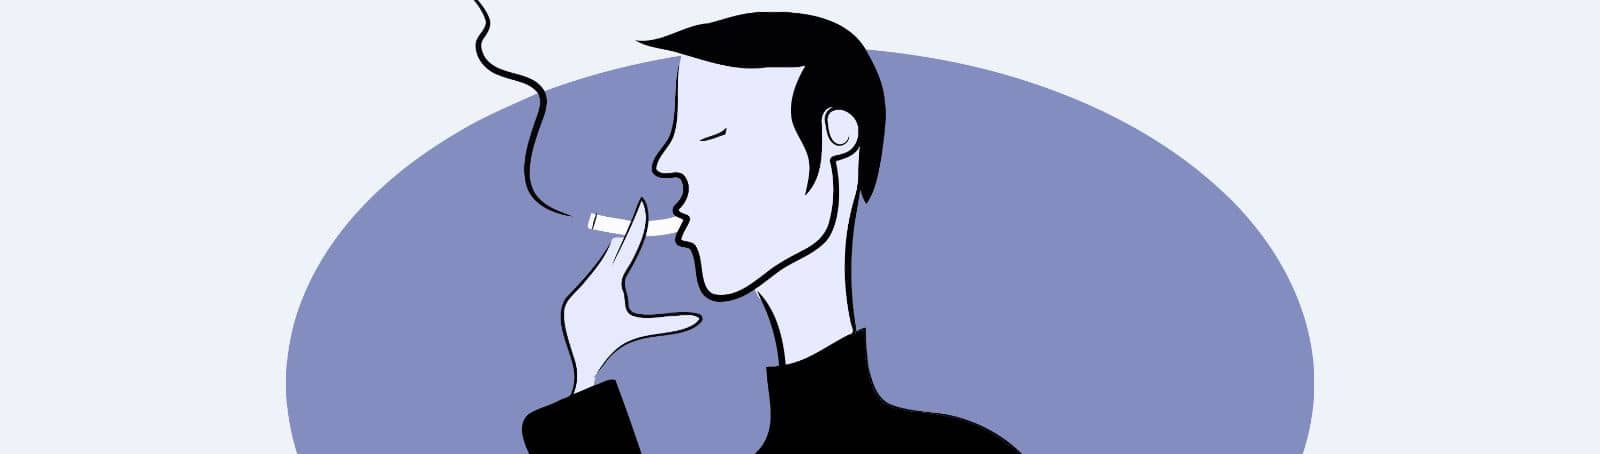 Nichtraucherhypnose - Berlin Grafik eines Rauchers mit Zigarette